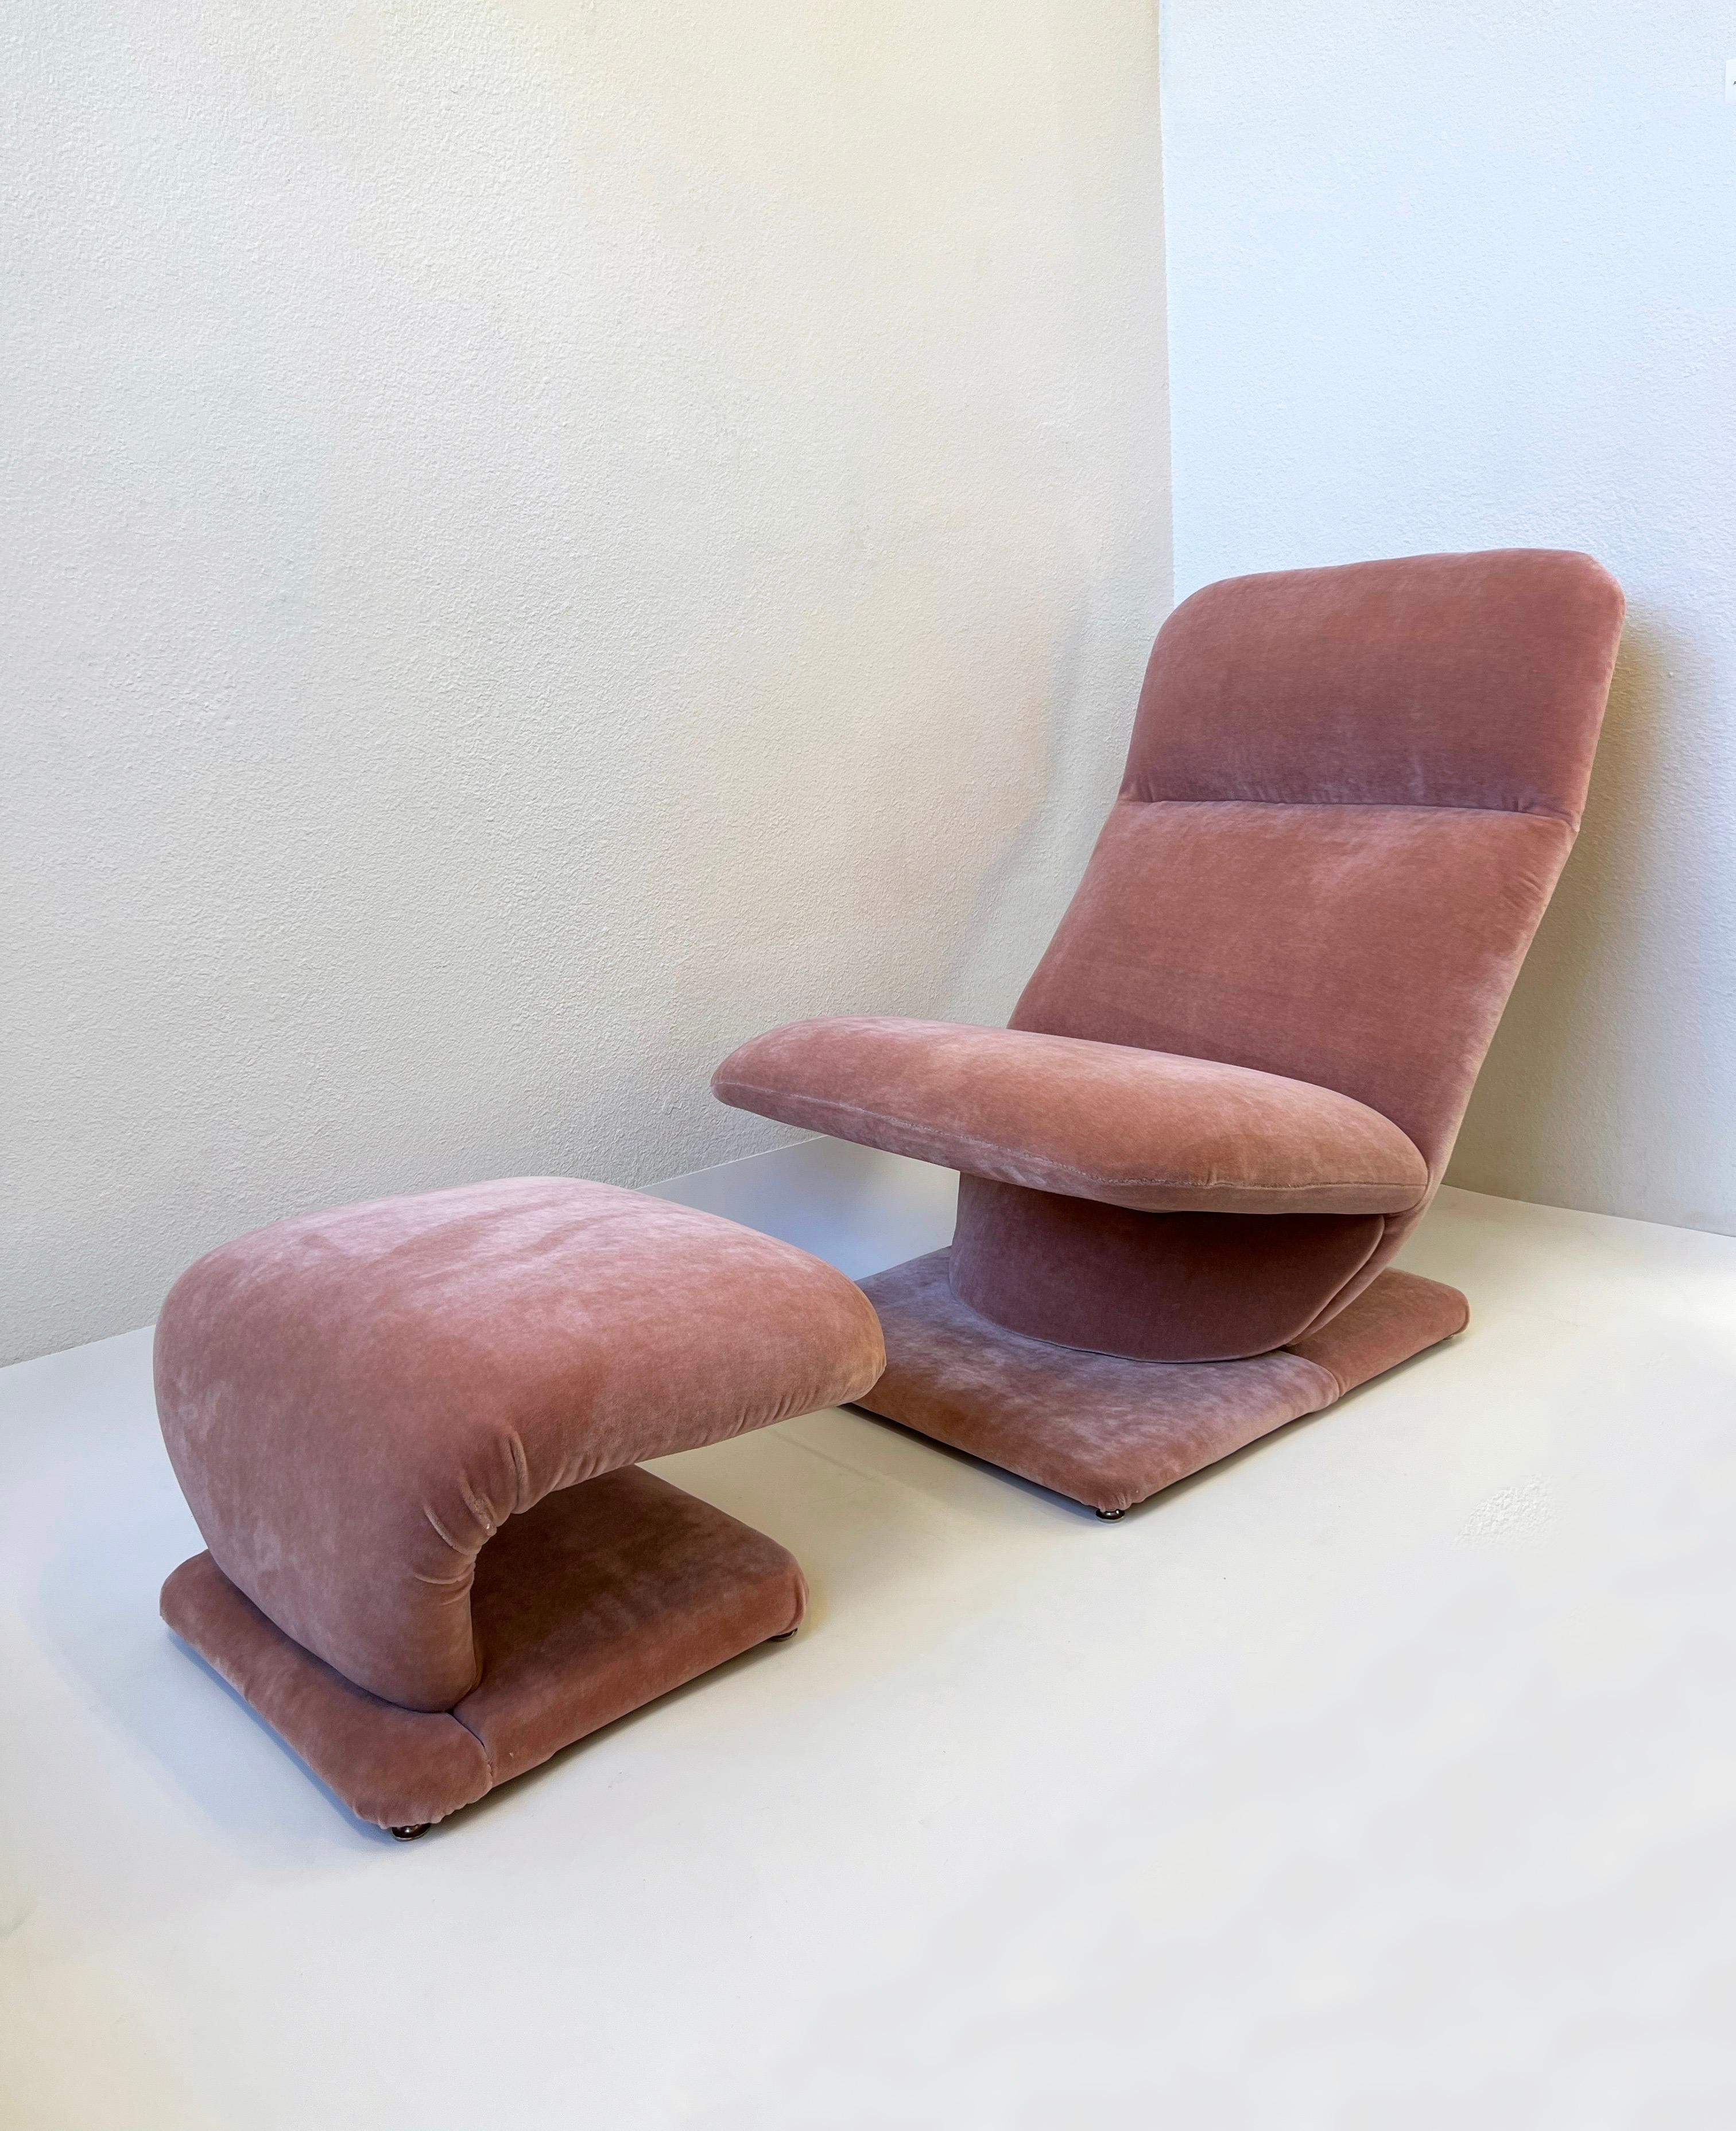 Ein schöner rosafarbener Lounge-Sessel aus weichem Mohair aus den 1980er Jahren mit Ottomane vom Design Institute of America.
Der Stuhl schaukelt, frisch renoviert.
Behält das DIA Label. 

Abmessungen: 
Stuhl - 36